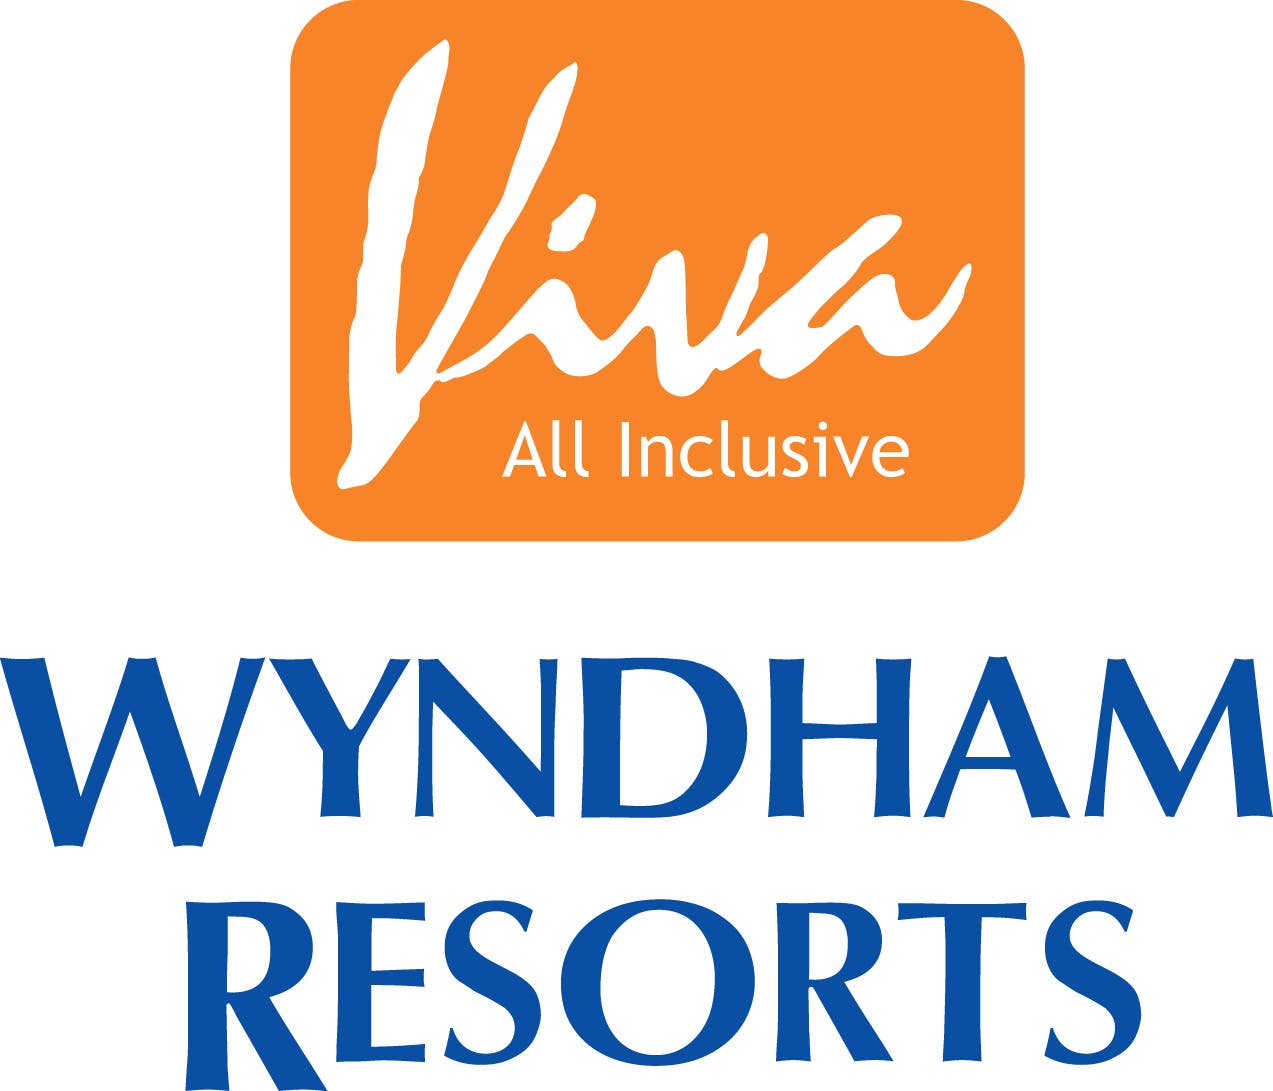 Complejo Viva Wyndham Resorts ofrece taller a niños